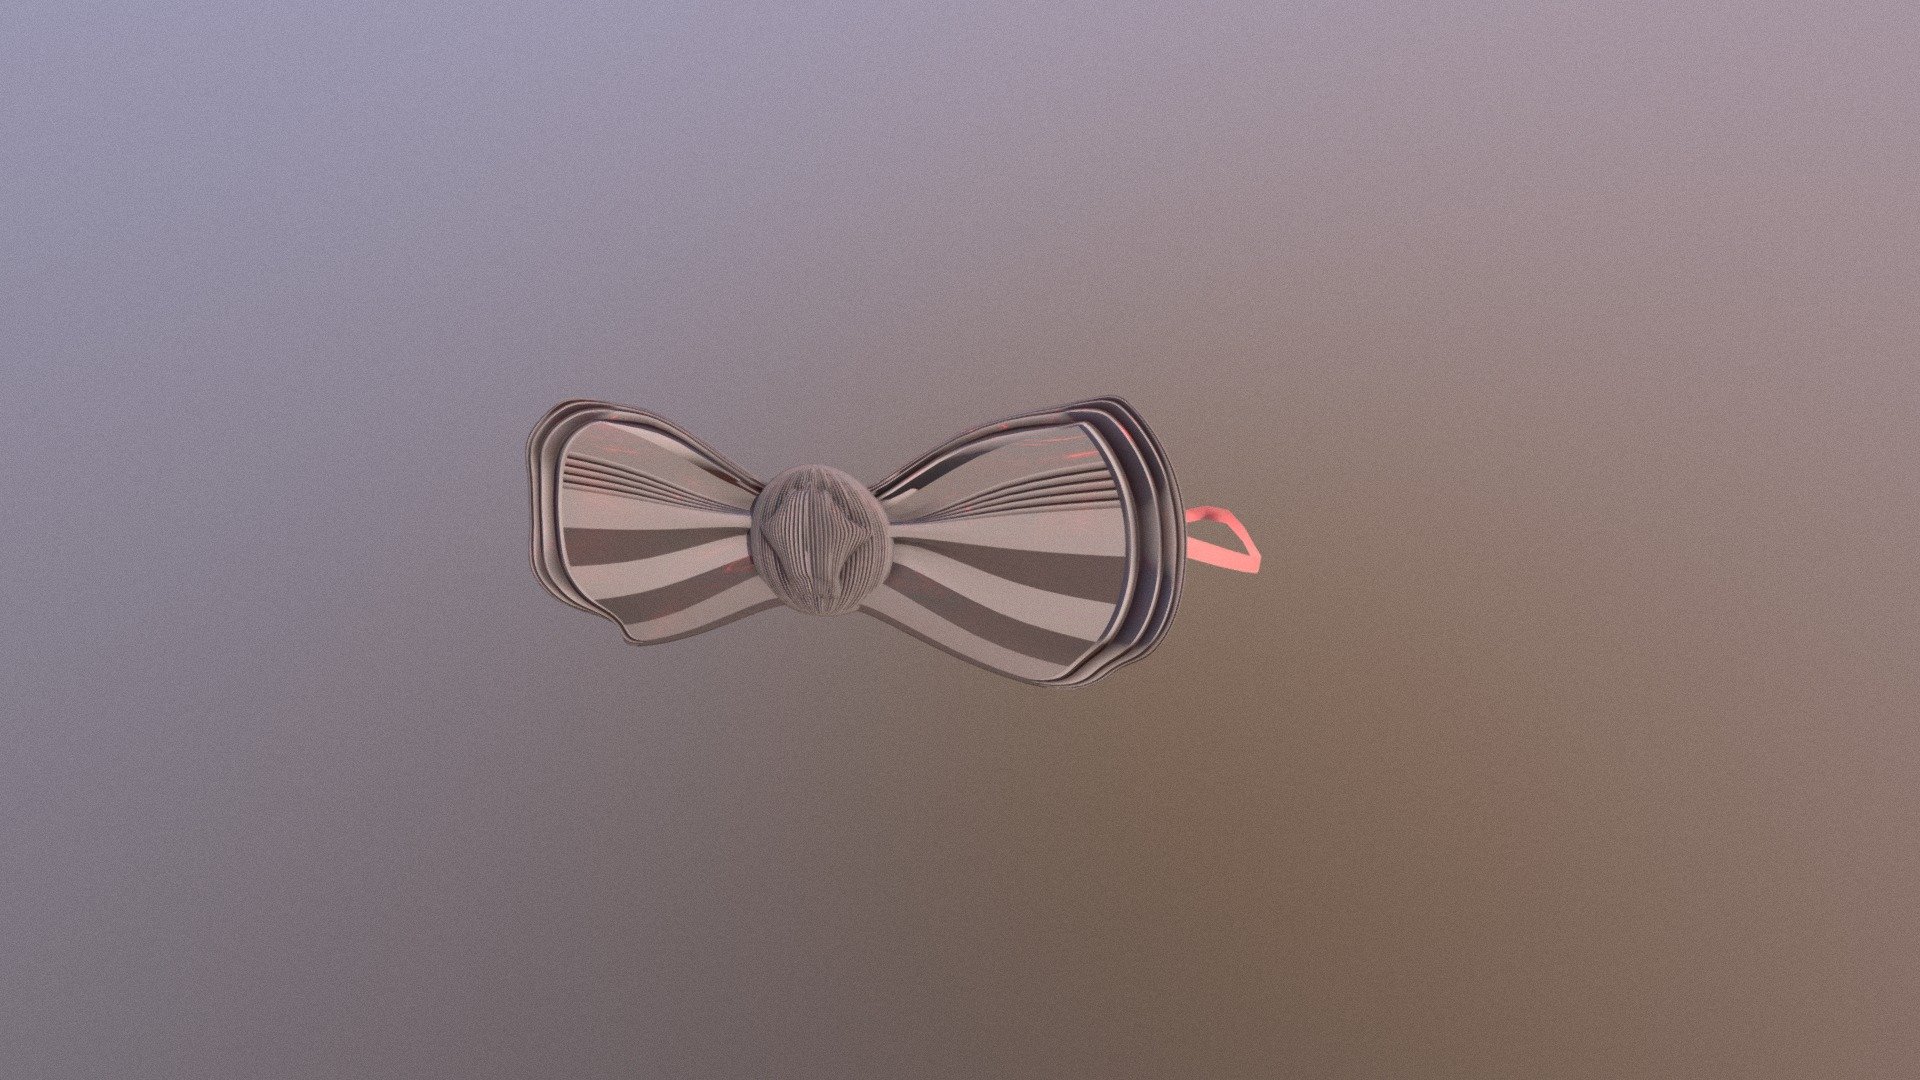 Bow Tie - 3D model by eddypears 3d model